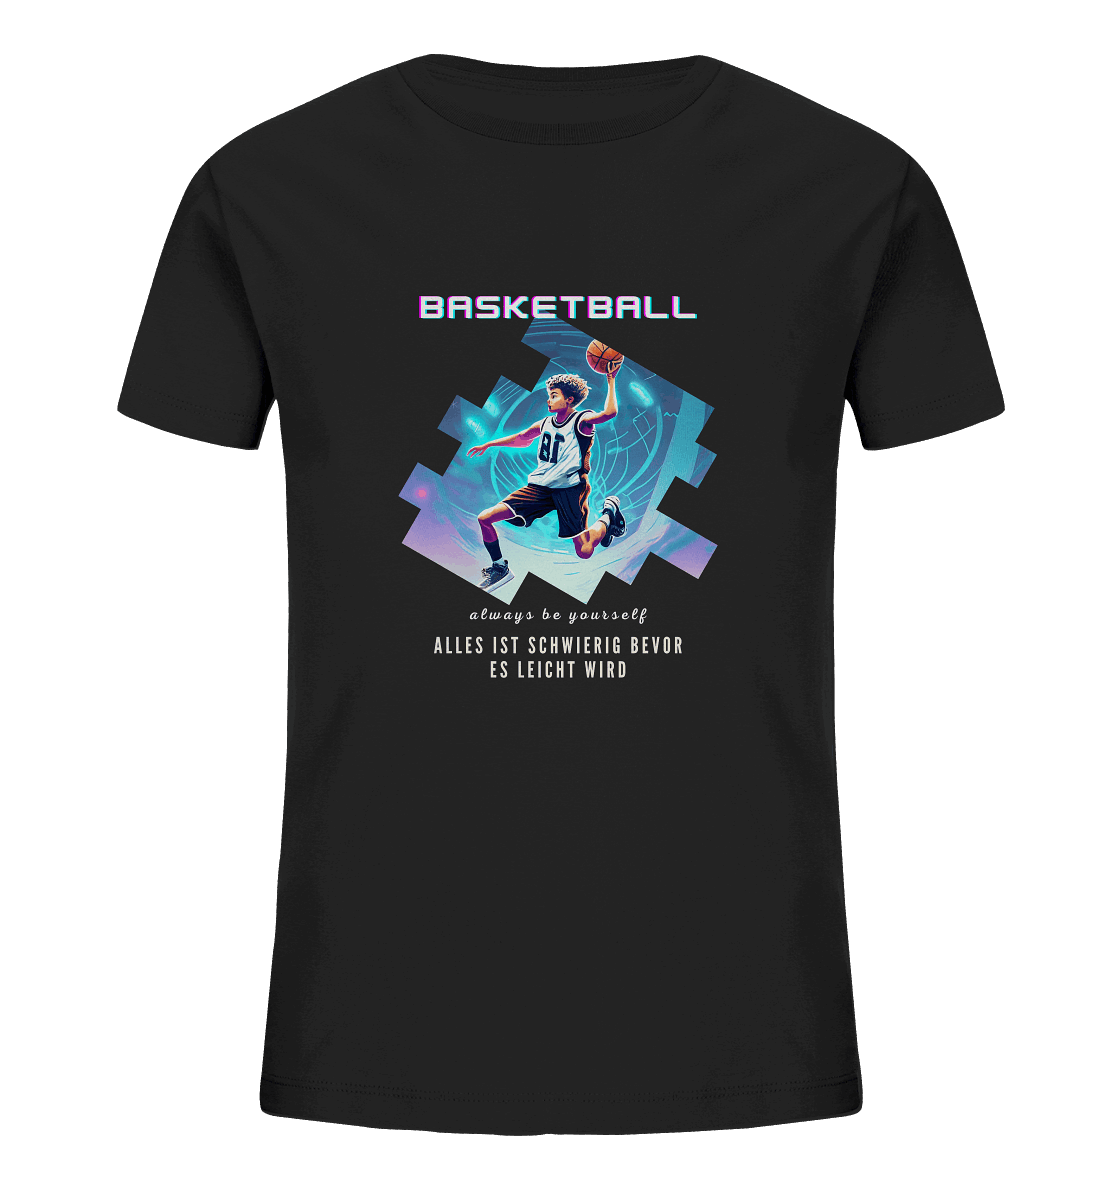 Alles ist schwierig bevor es leicht wird - Basketball - Kids Organic Shirt